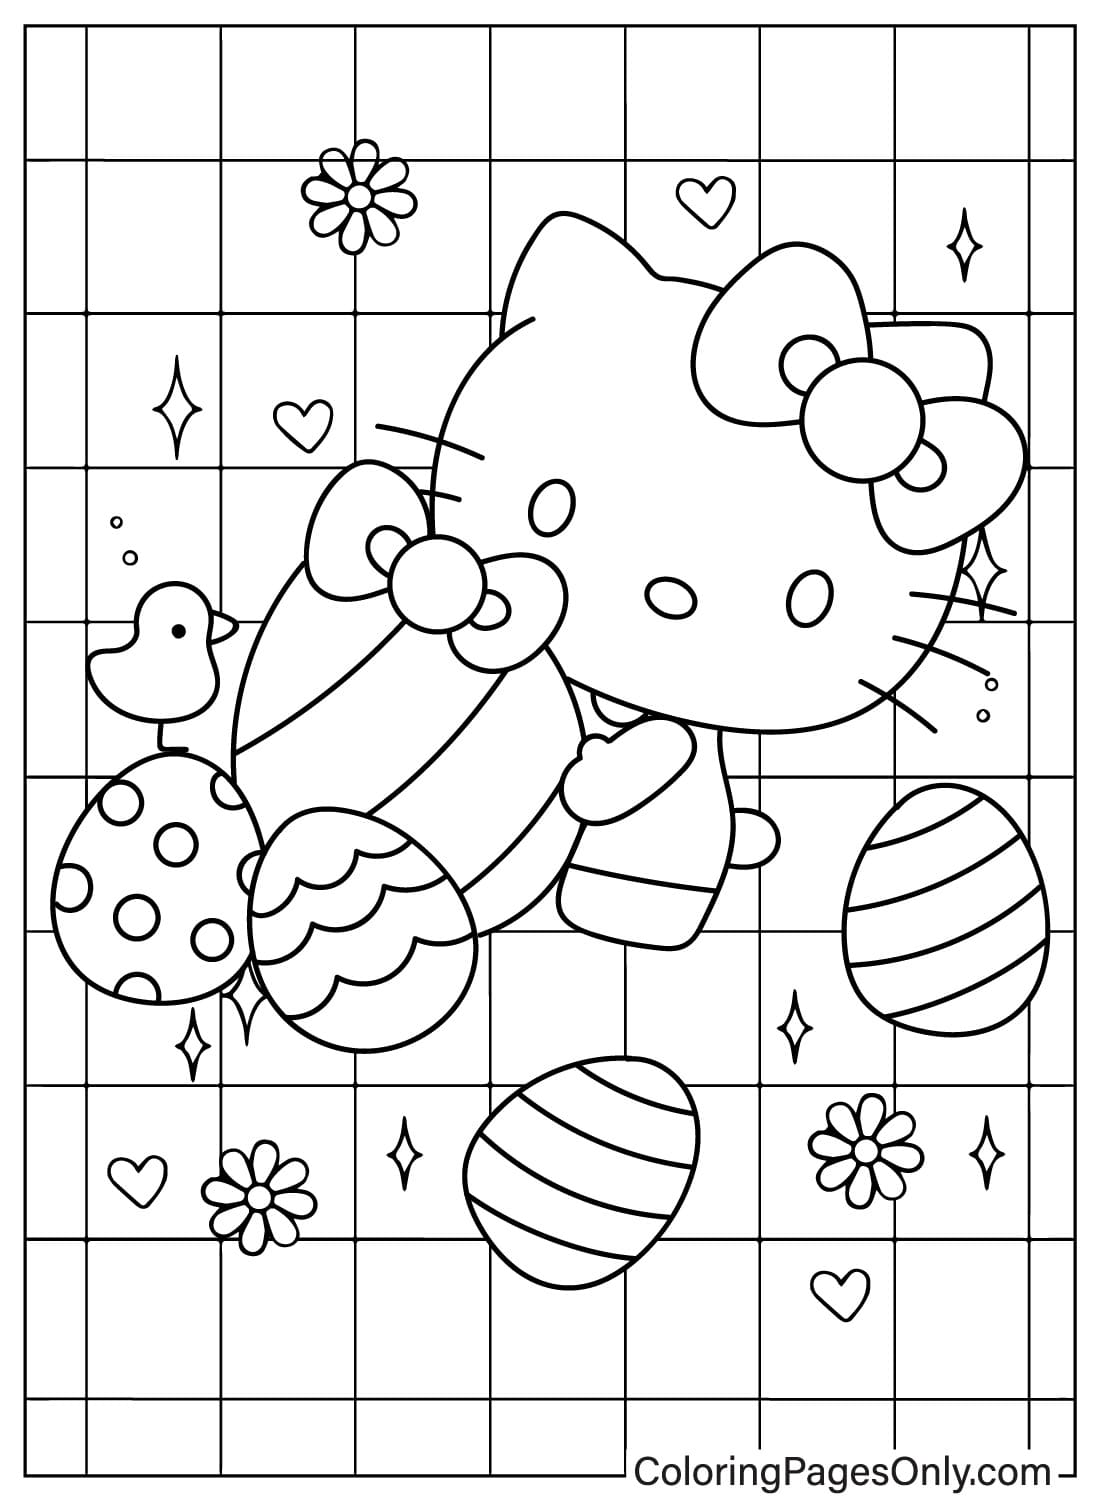 Пасхальная раскраска Hello Kitty бесплатно из пасхального мультфильма